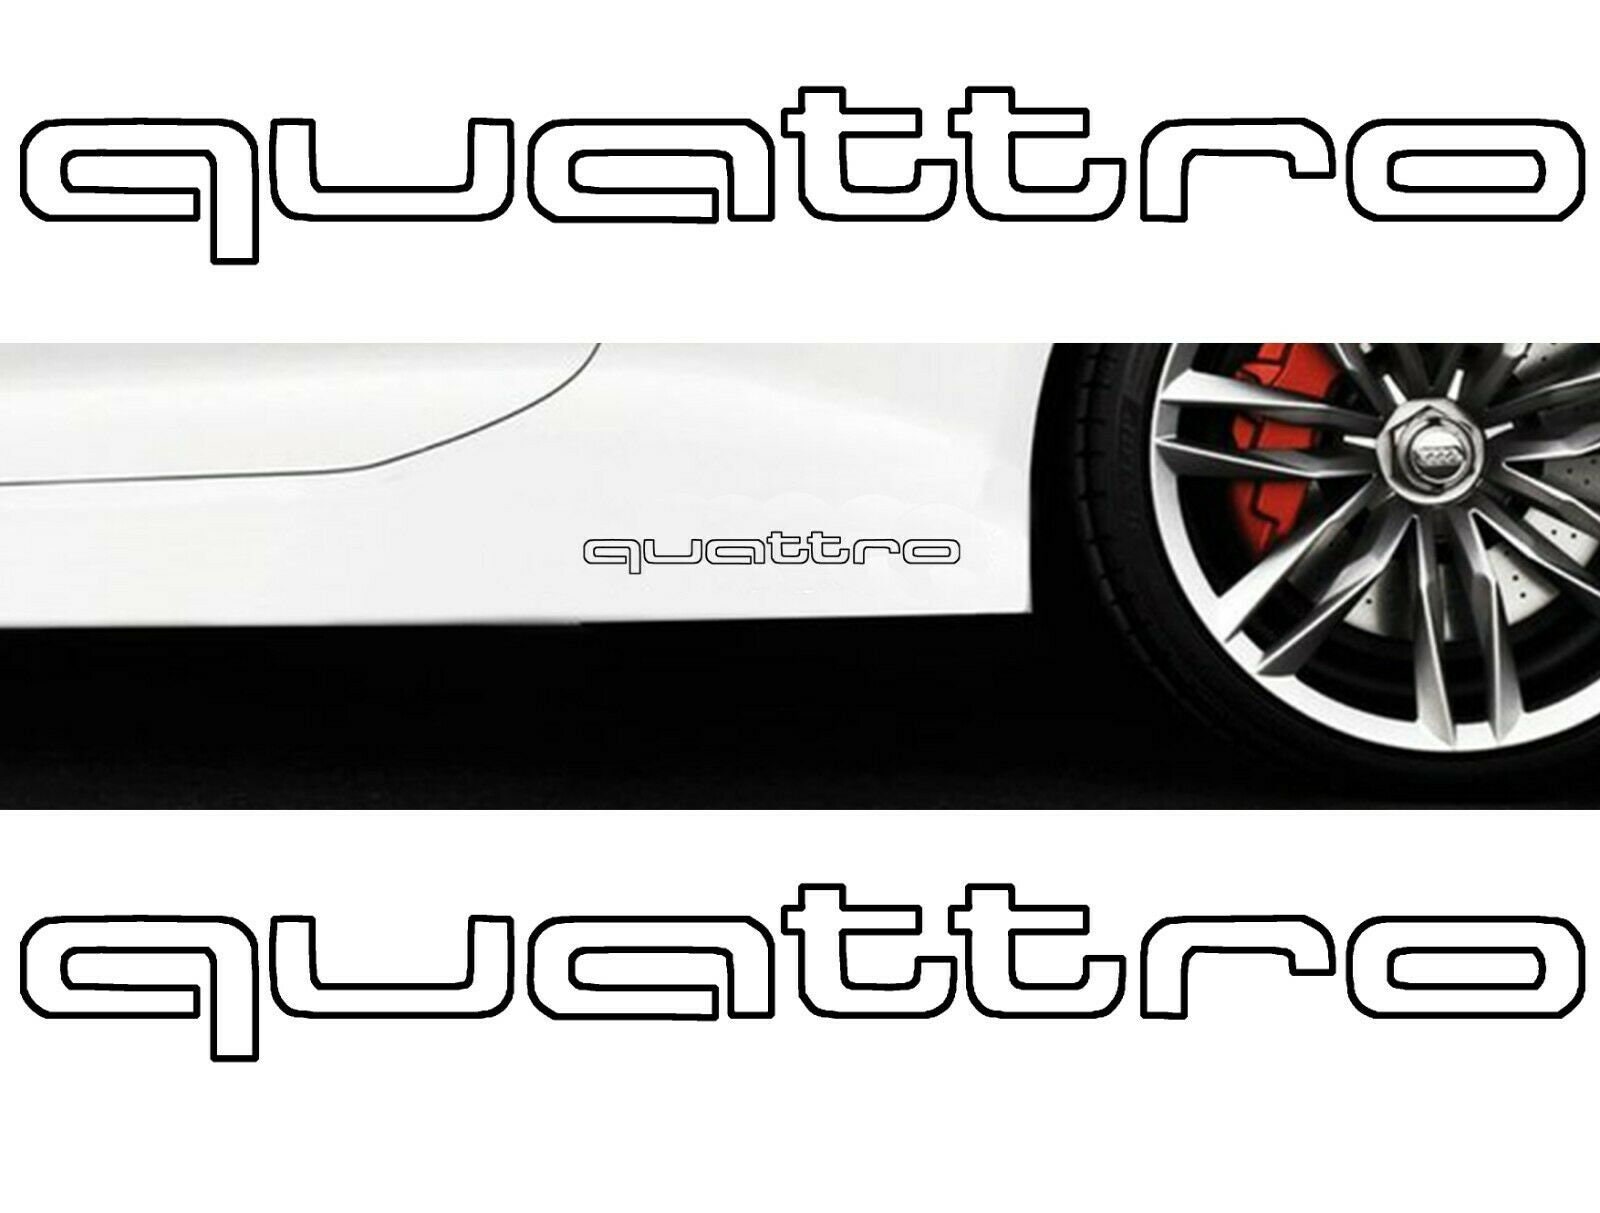 Buy Audi Quattro Online In India -  India